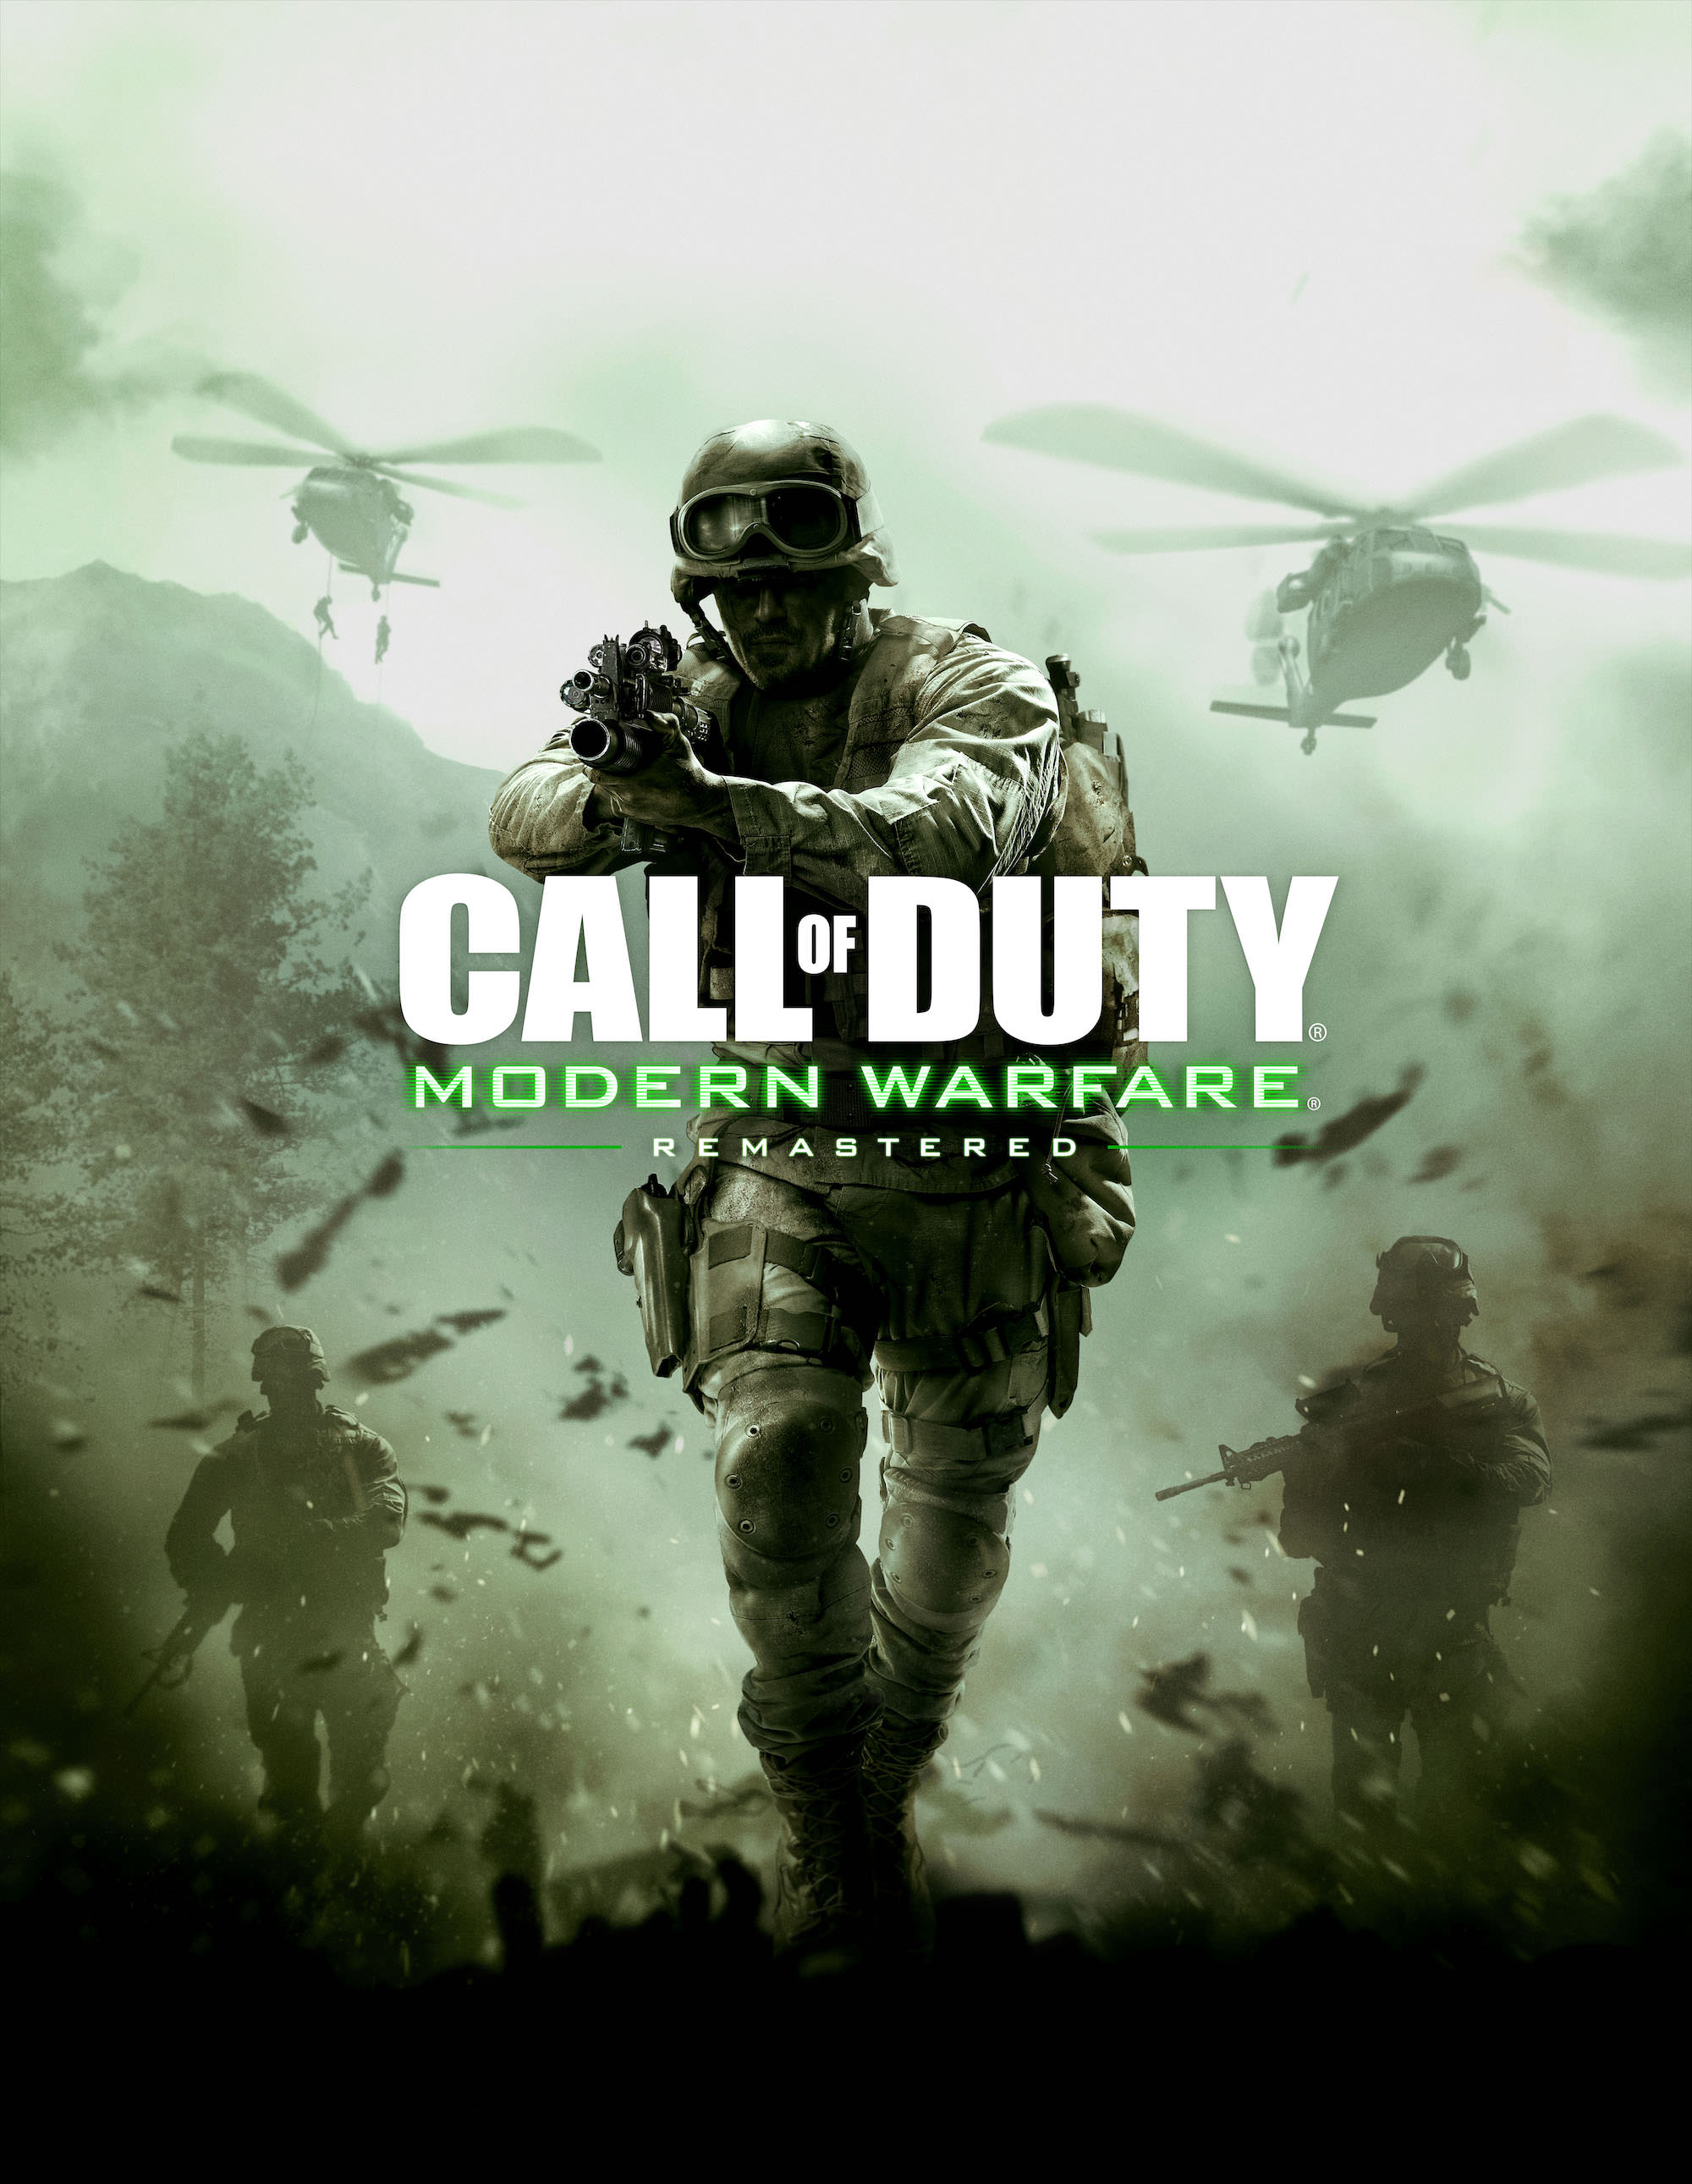 call of duty modern warfare fondo de pantalla remasterizado,juego de acción y aventura,juego de pc,soldado,película,juego de disparos